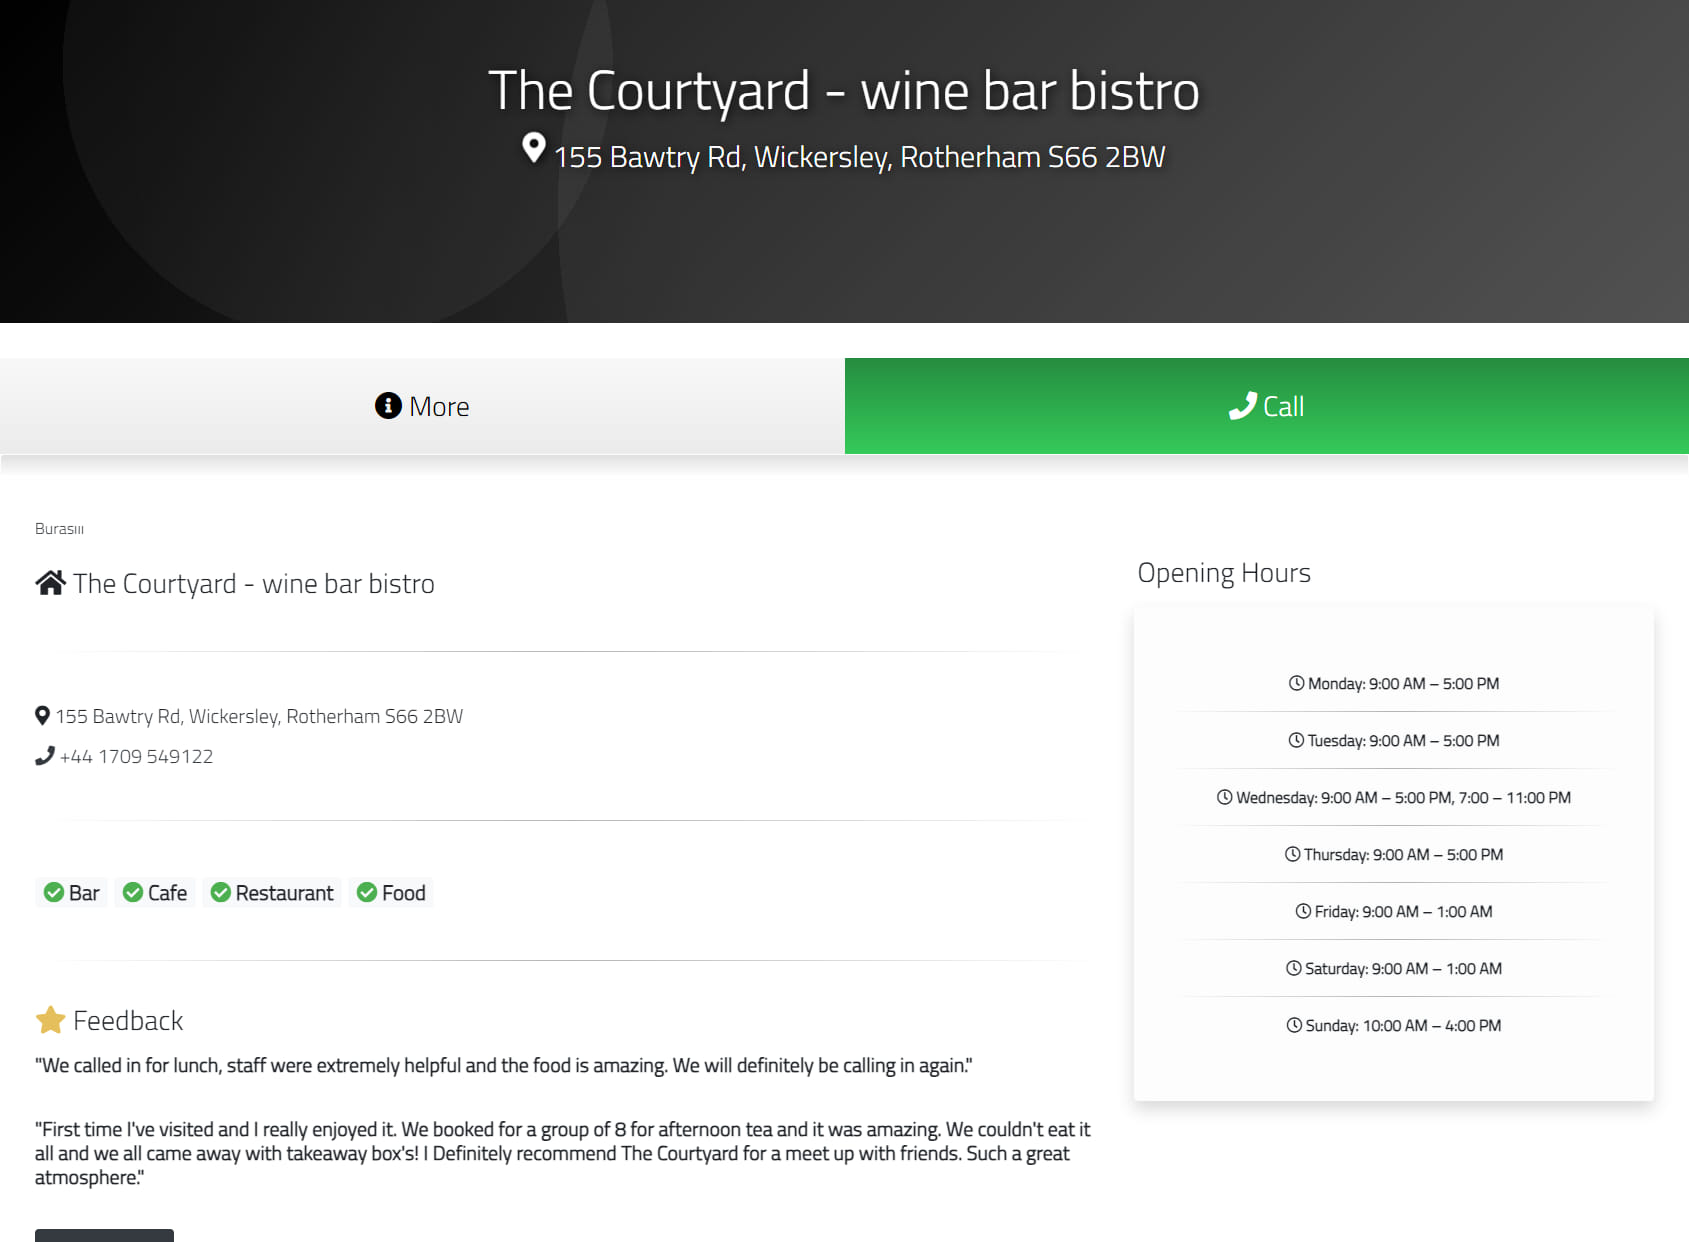 The Courtyard - wine bar & bistro